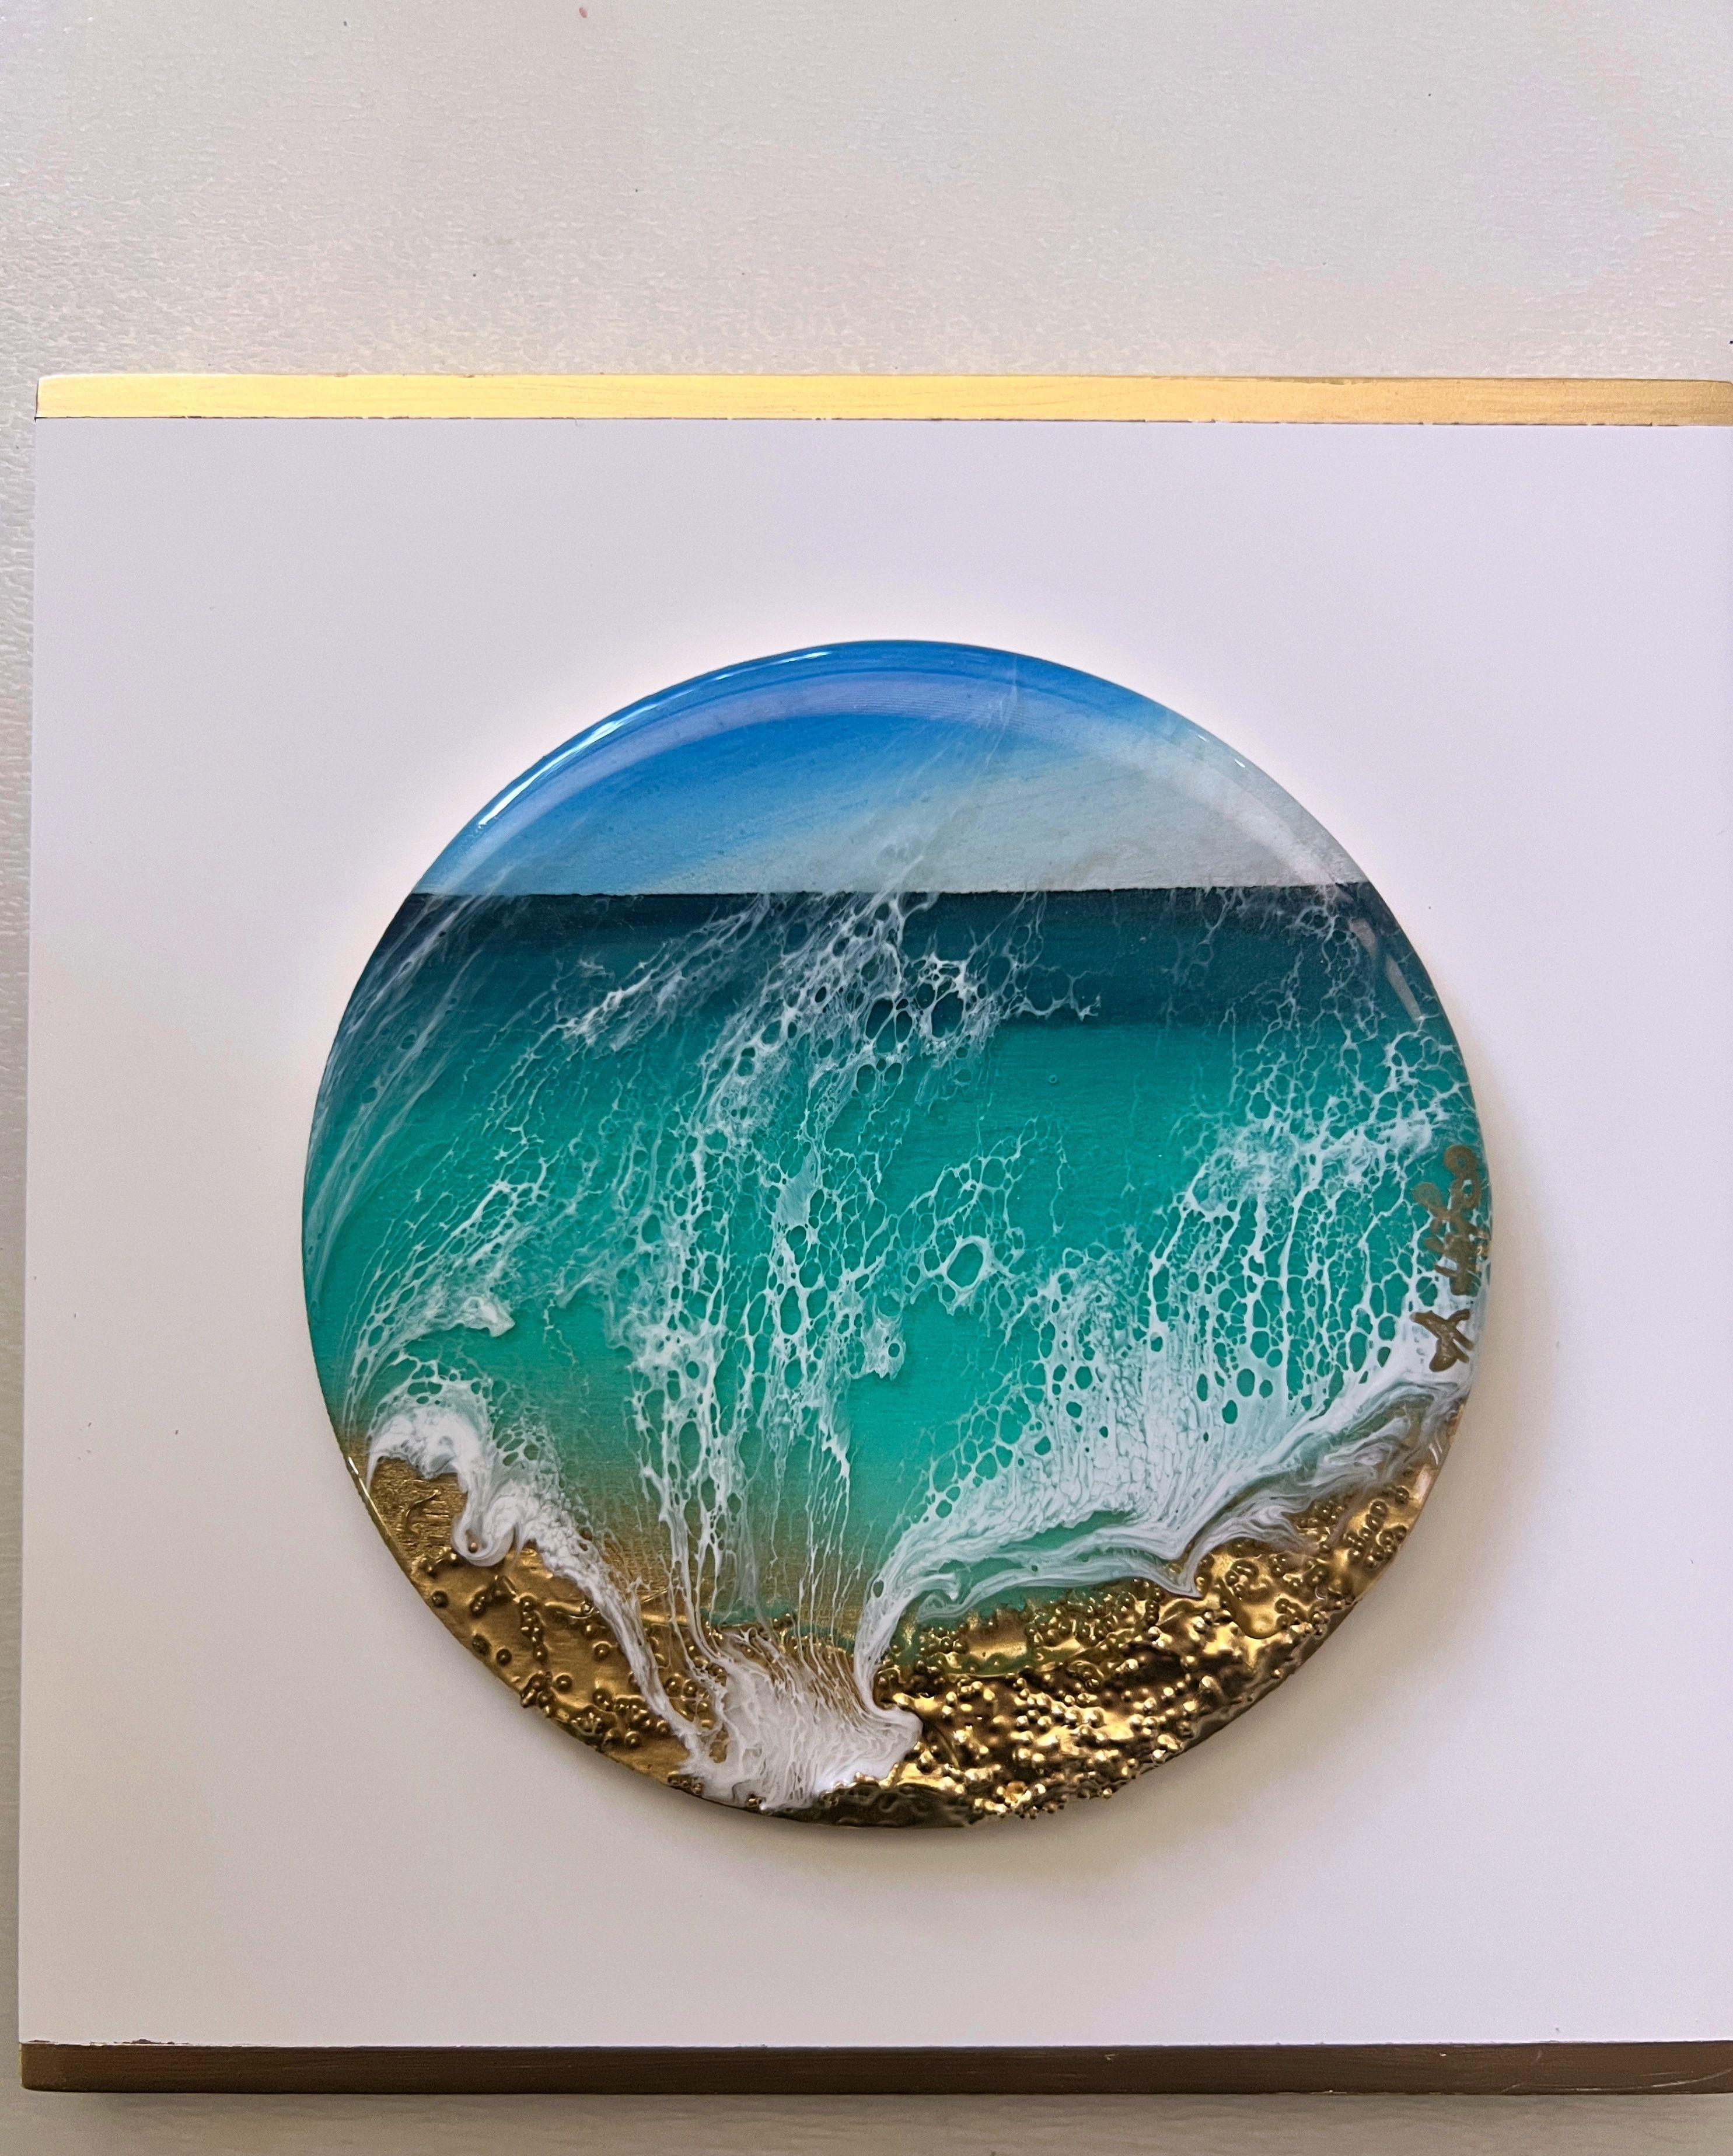 Miniatur-Ozeanbild rund     Inspiriert von den Meeresfarben der Turks- und Caicosinseln  Verschiedene Schattierungen von Blautönen, Türkis, Teal, Aqua, Gold und Weiß  Dieses Gemälde muss nicht gerahmt werden, das gemalte Bild erstreckt sich über die